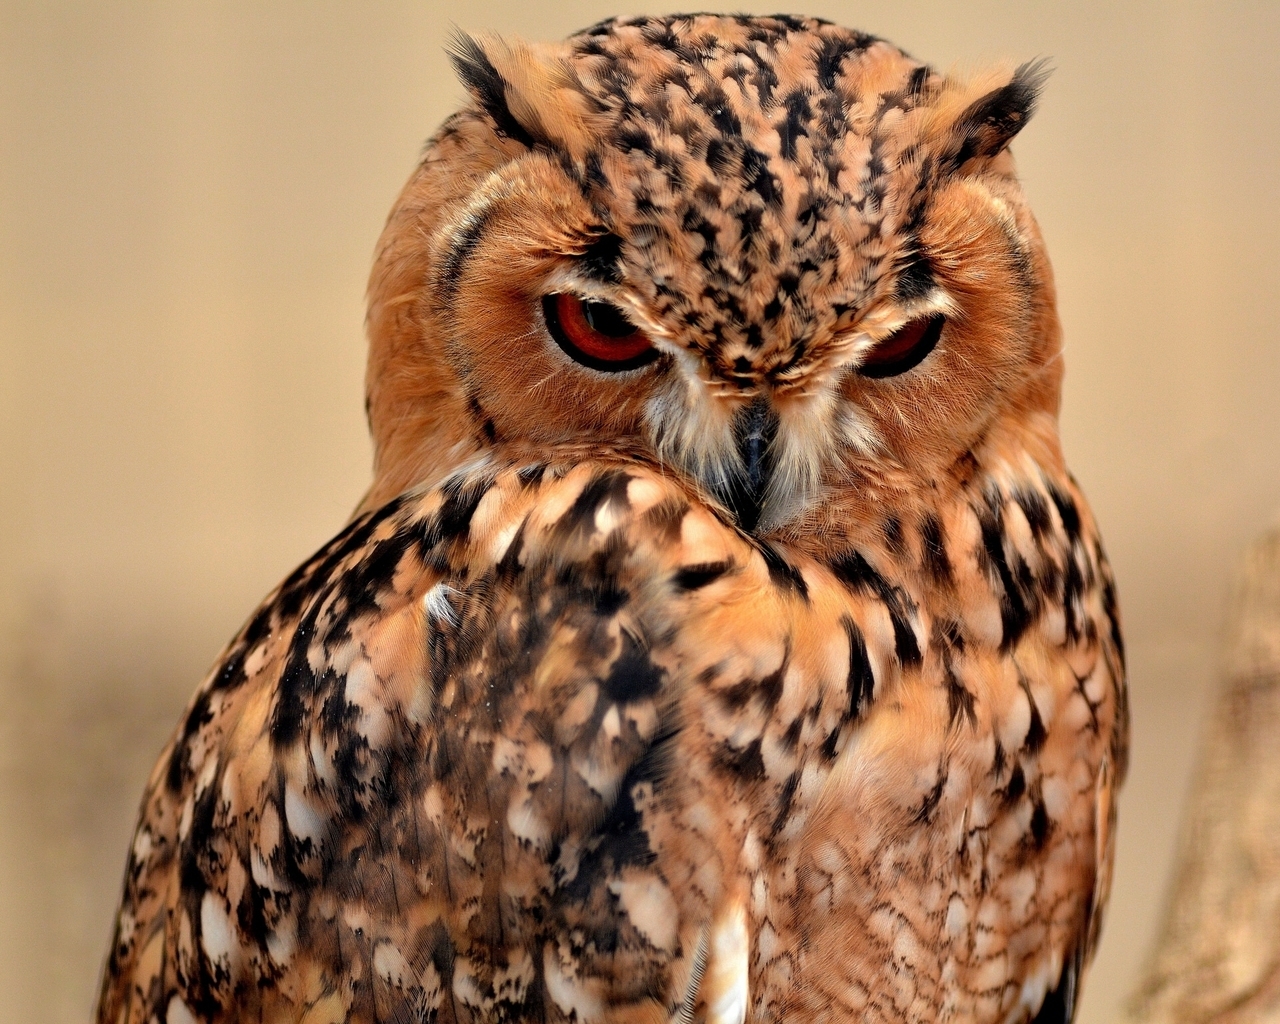 Desert Eagle Owl for 1280 x 1024 resolution